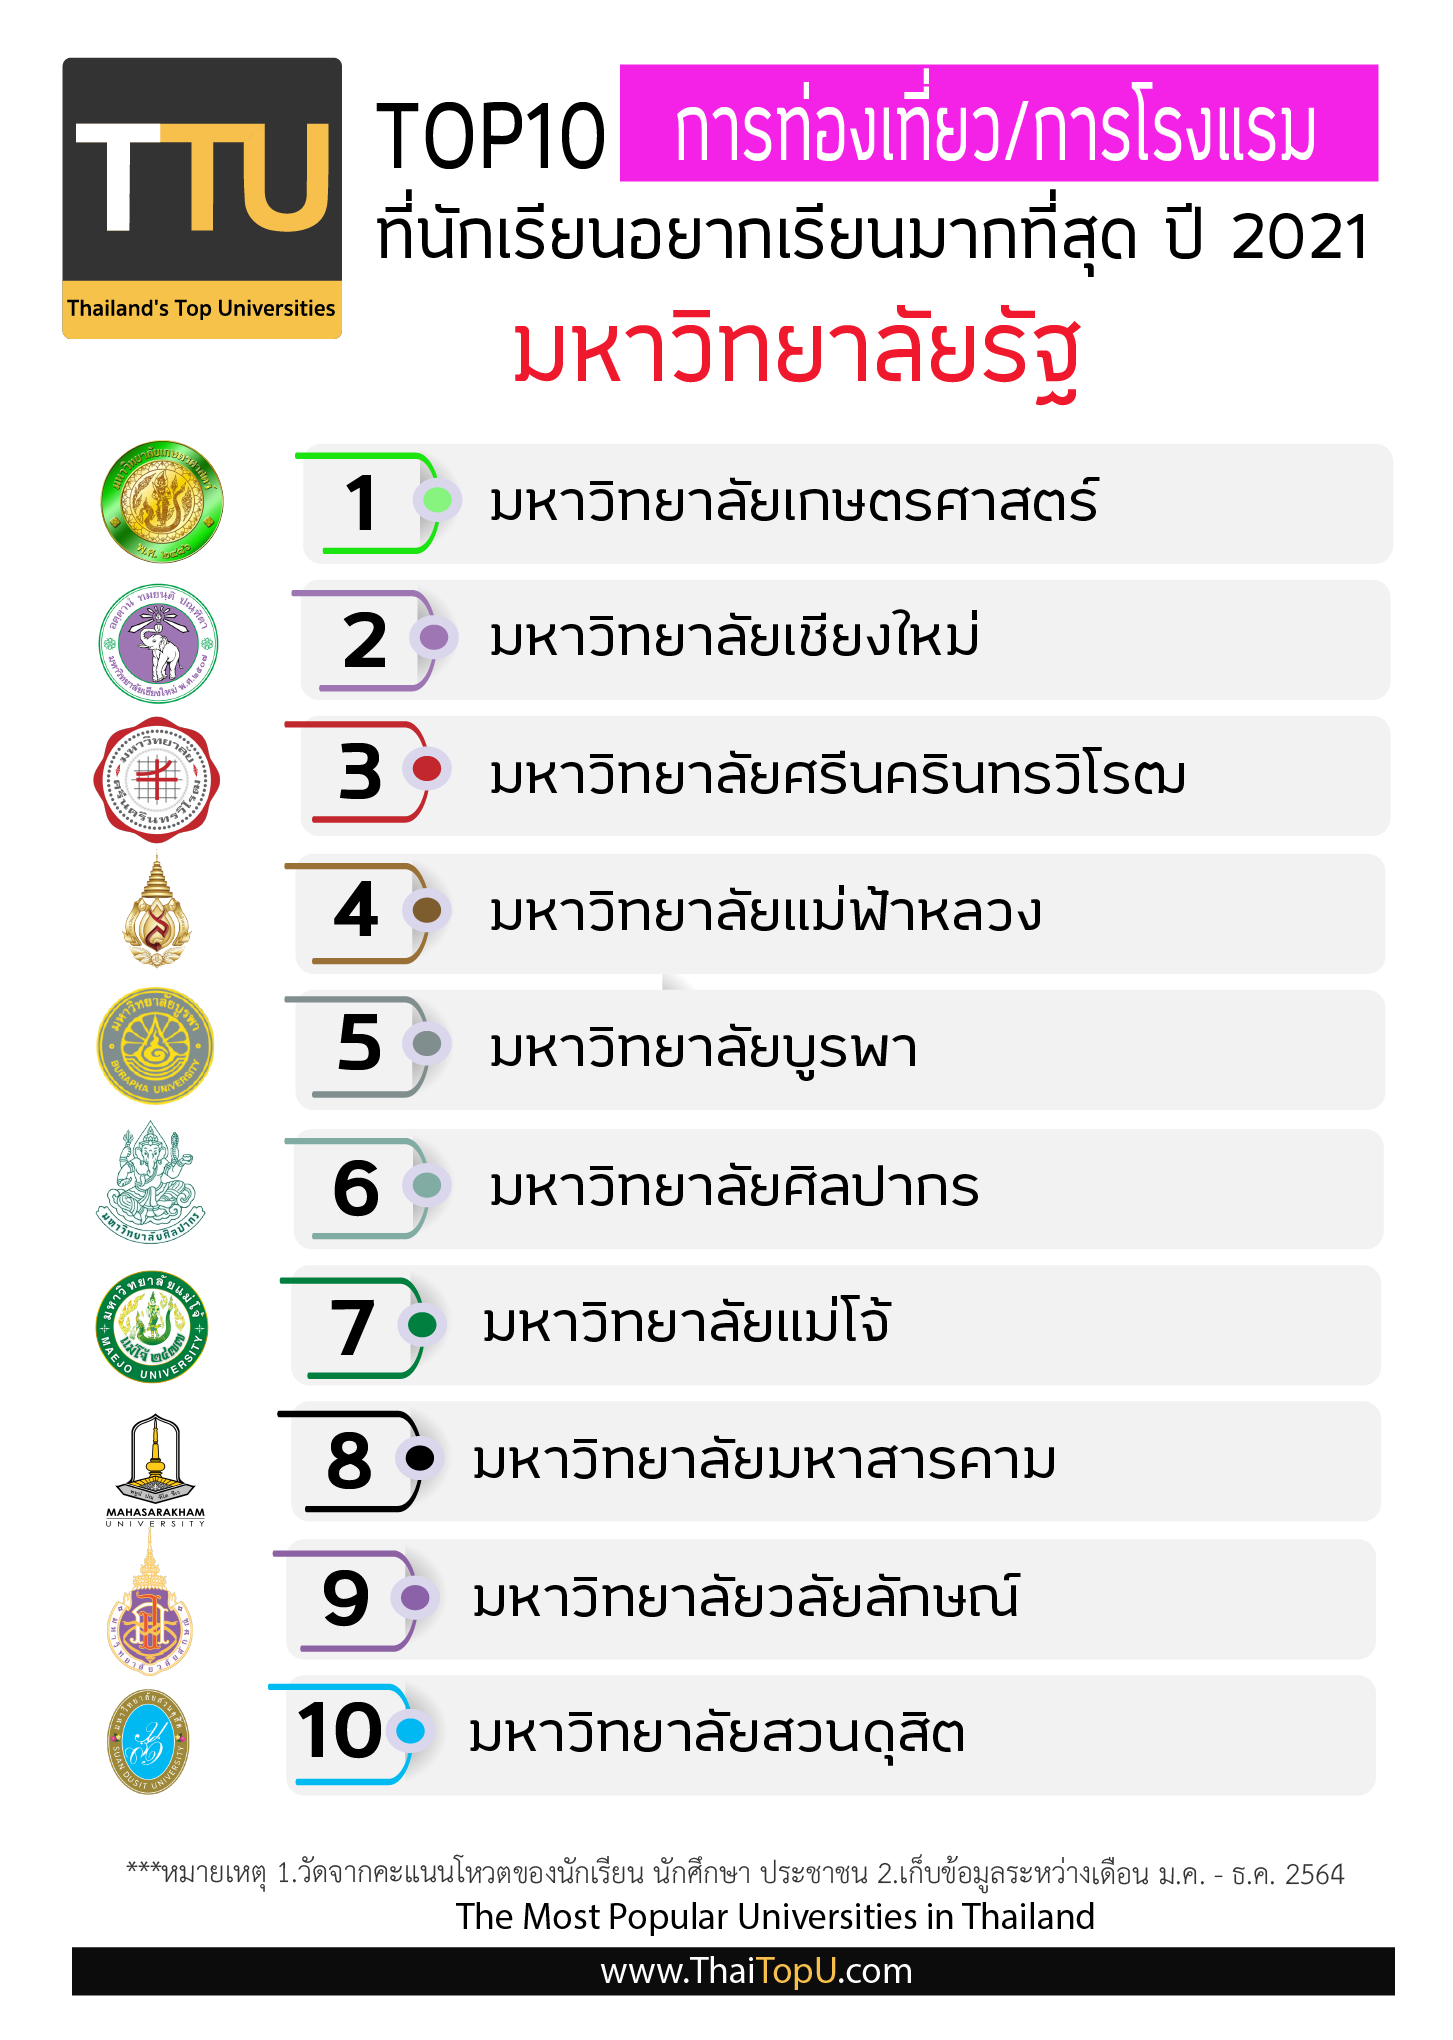 Thailand Top Universities